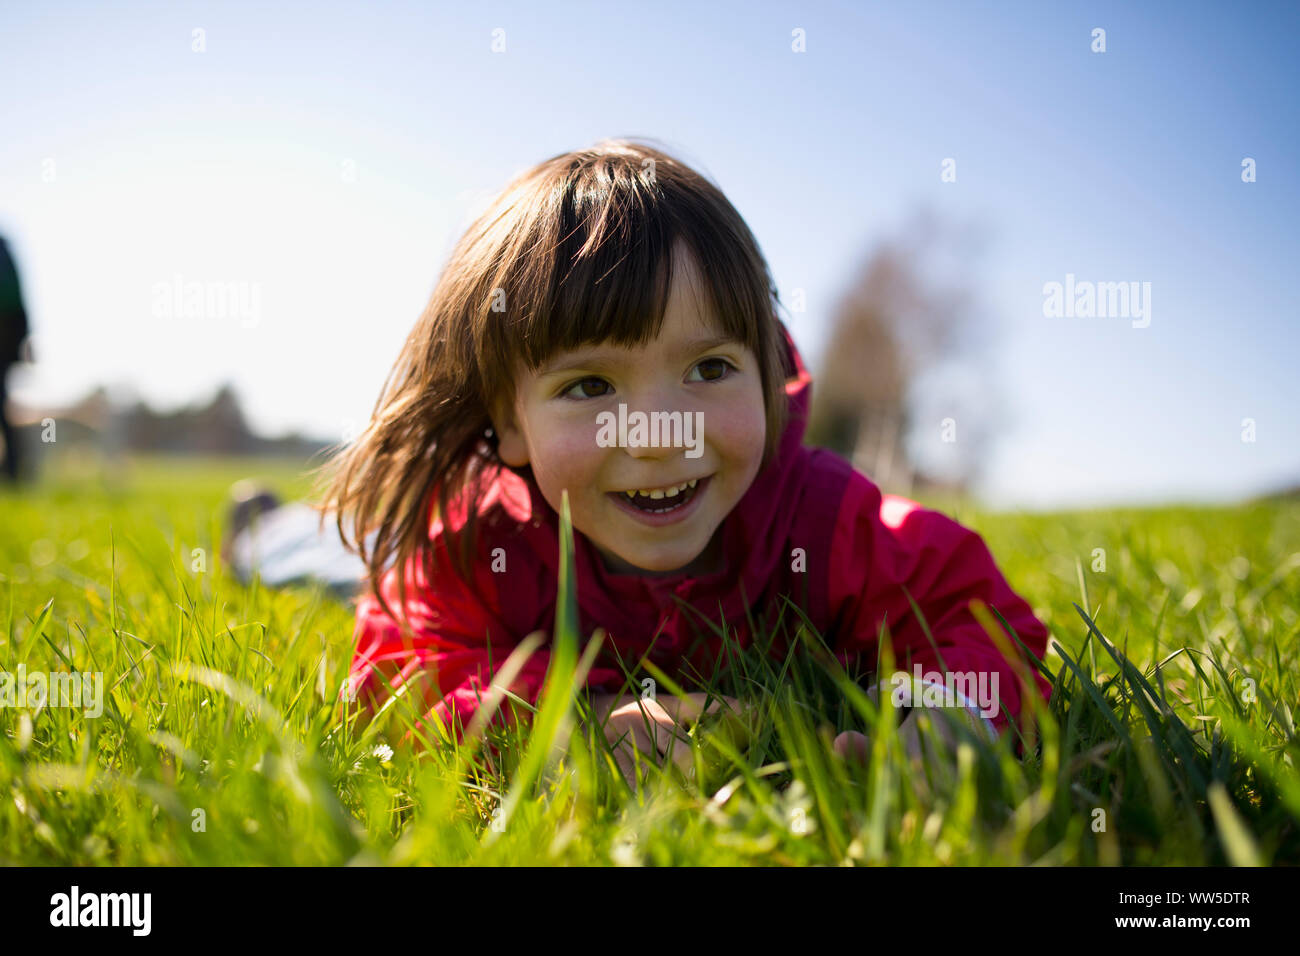 5-anno-vecchia ragazza distesa con giacca rossa su un verde prato Foto Stock